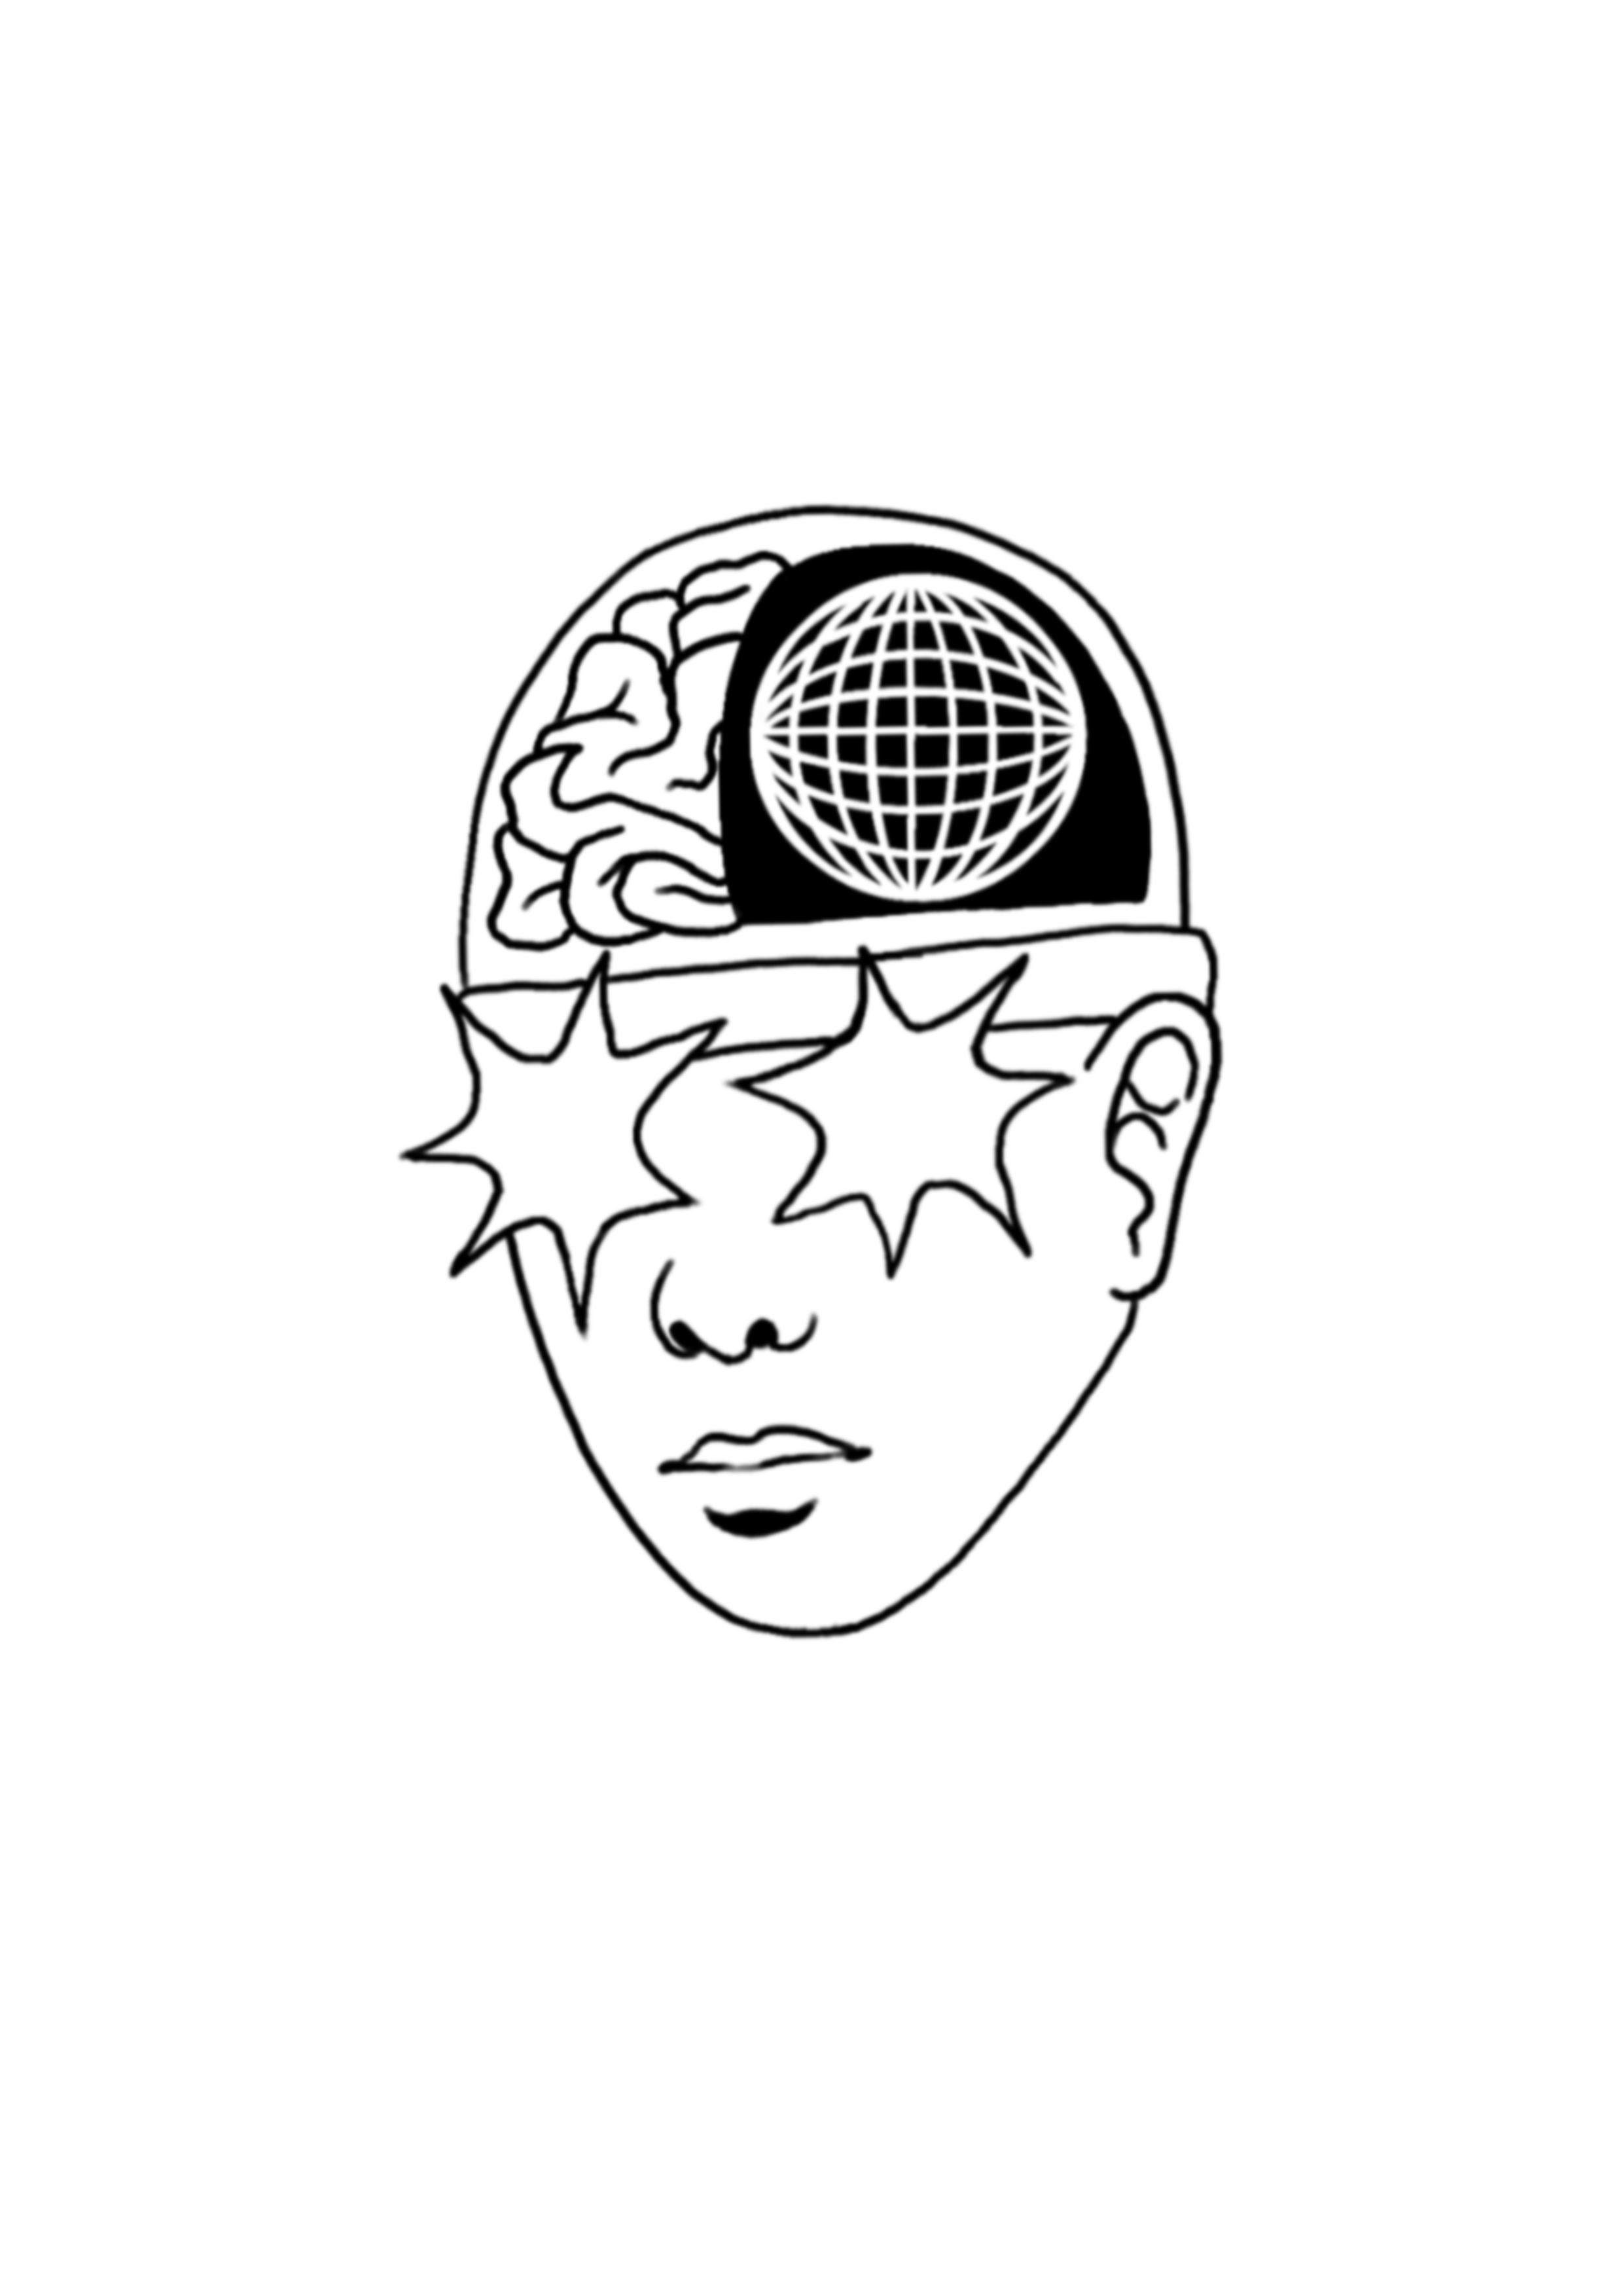 Brainiac – Machineface